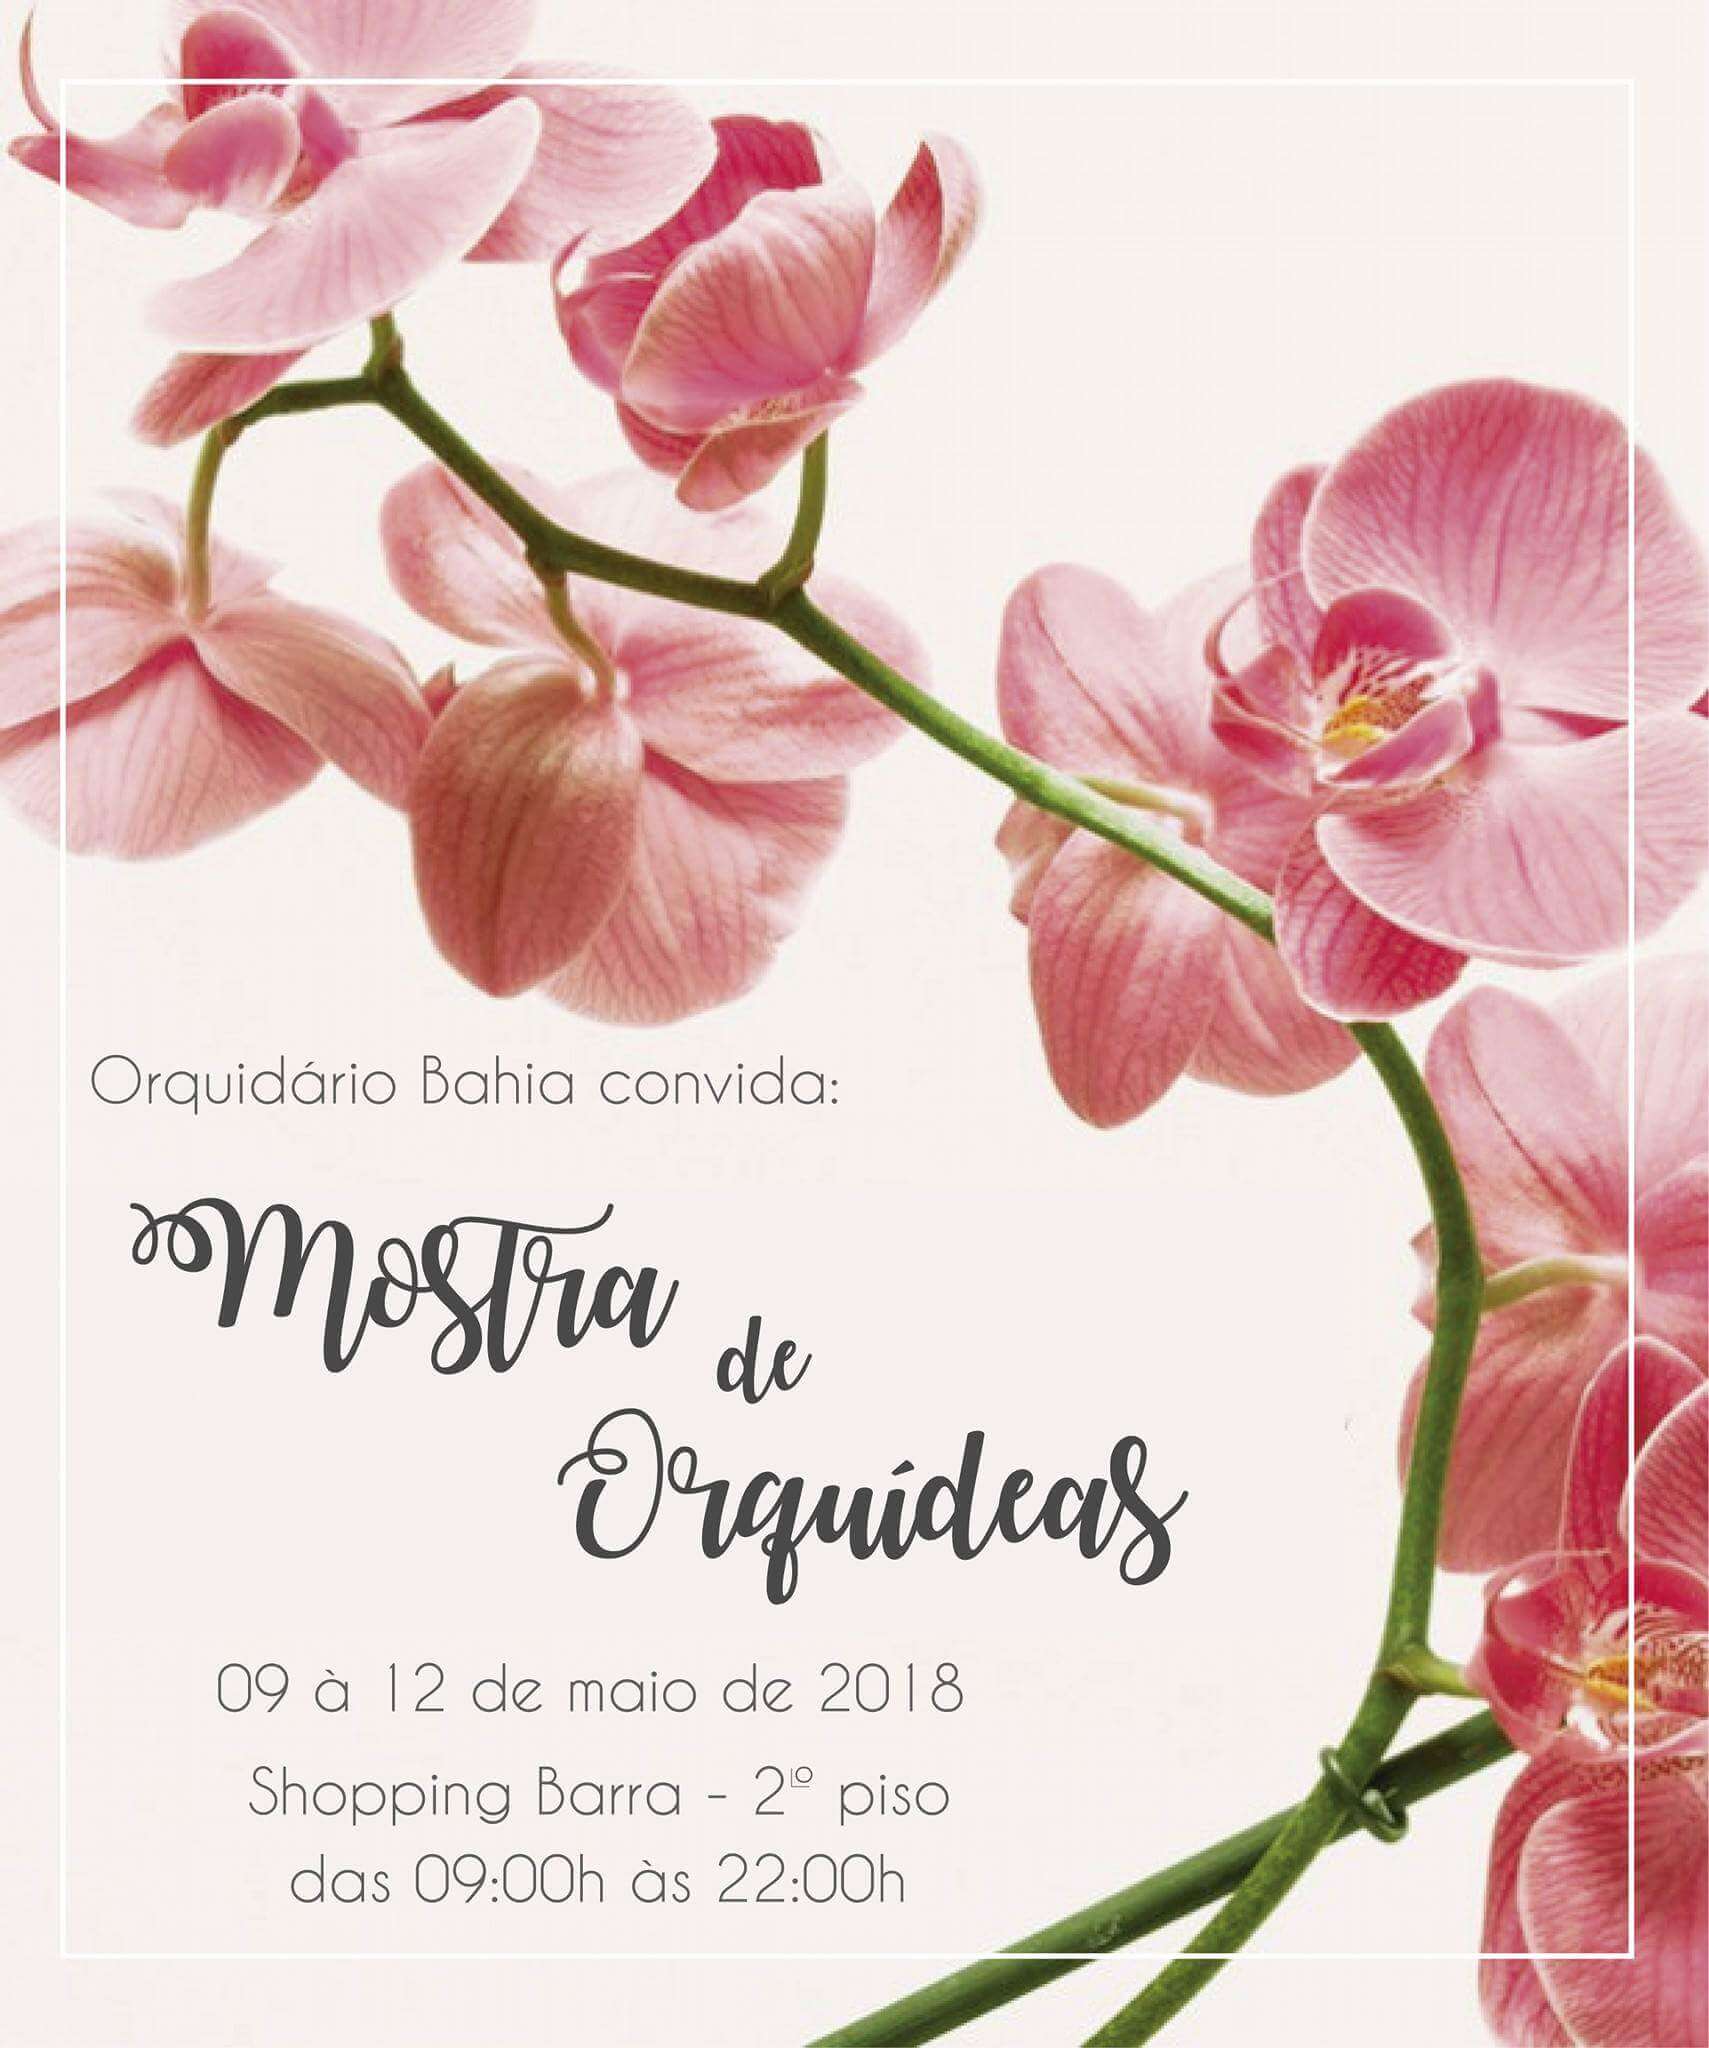 Mostra de Orquídeas do Orquidário Bahia no Shopping Barra 2018.1 -  Orquidário Bahia